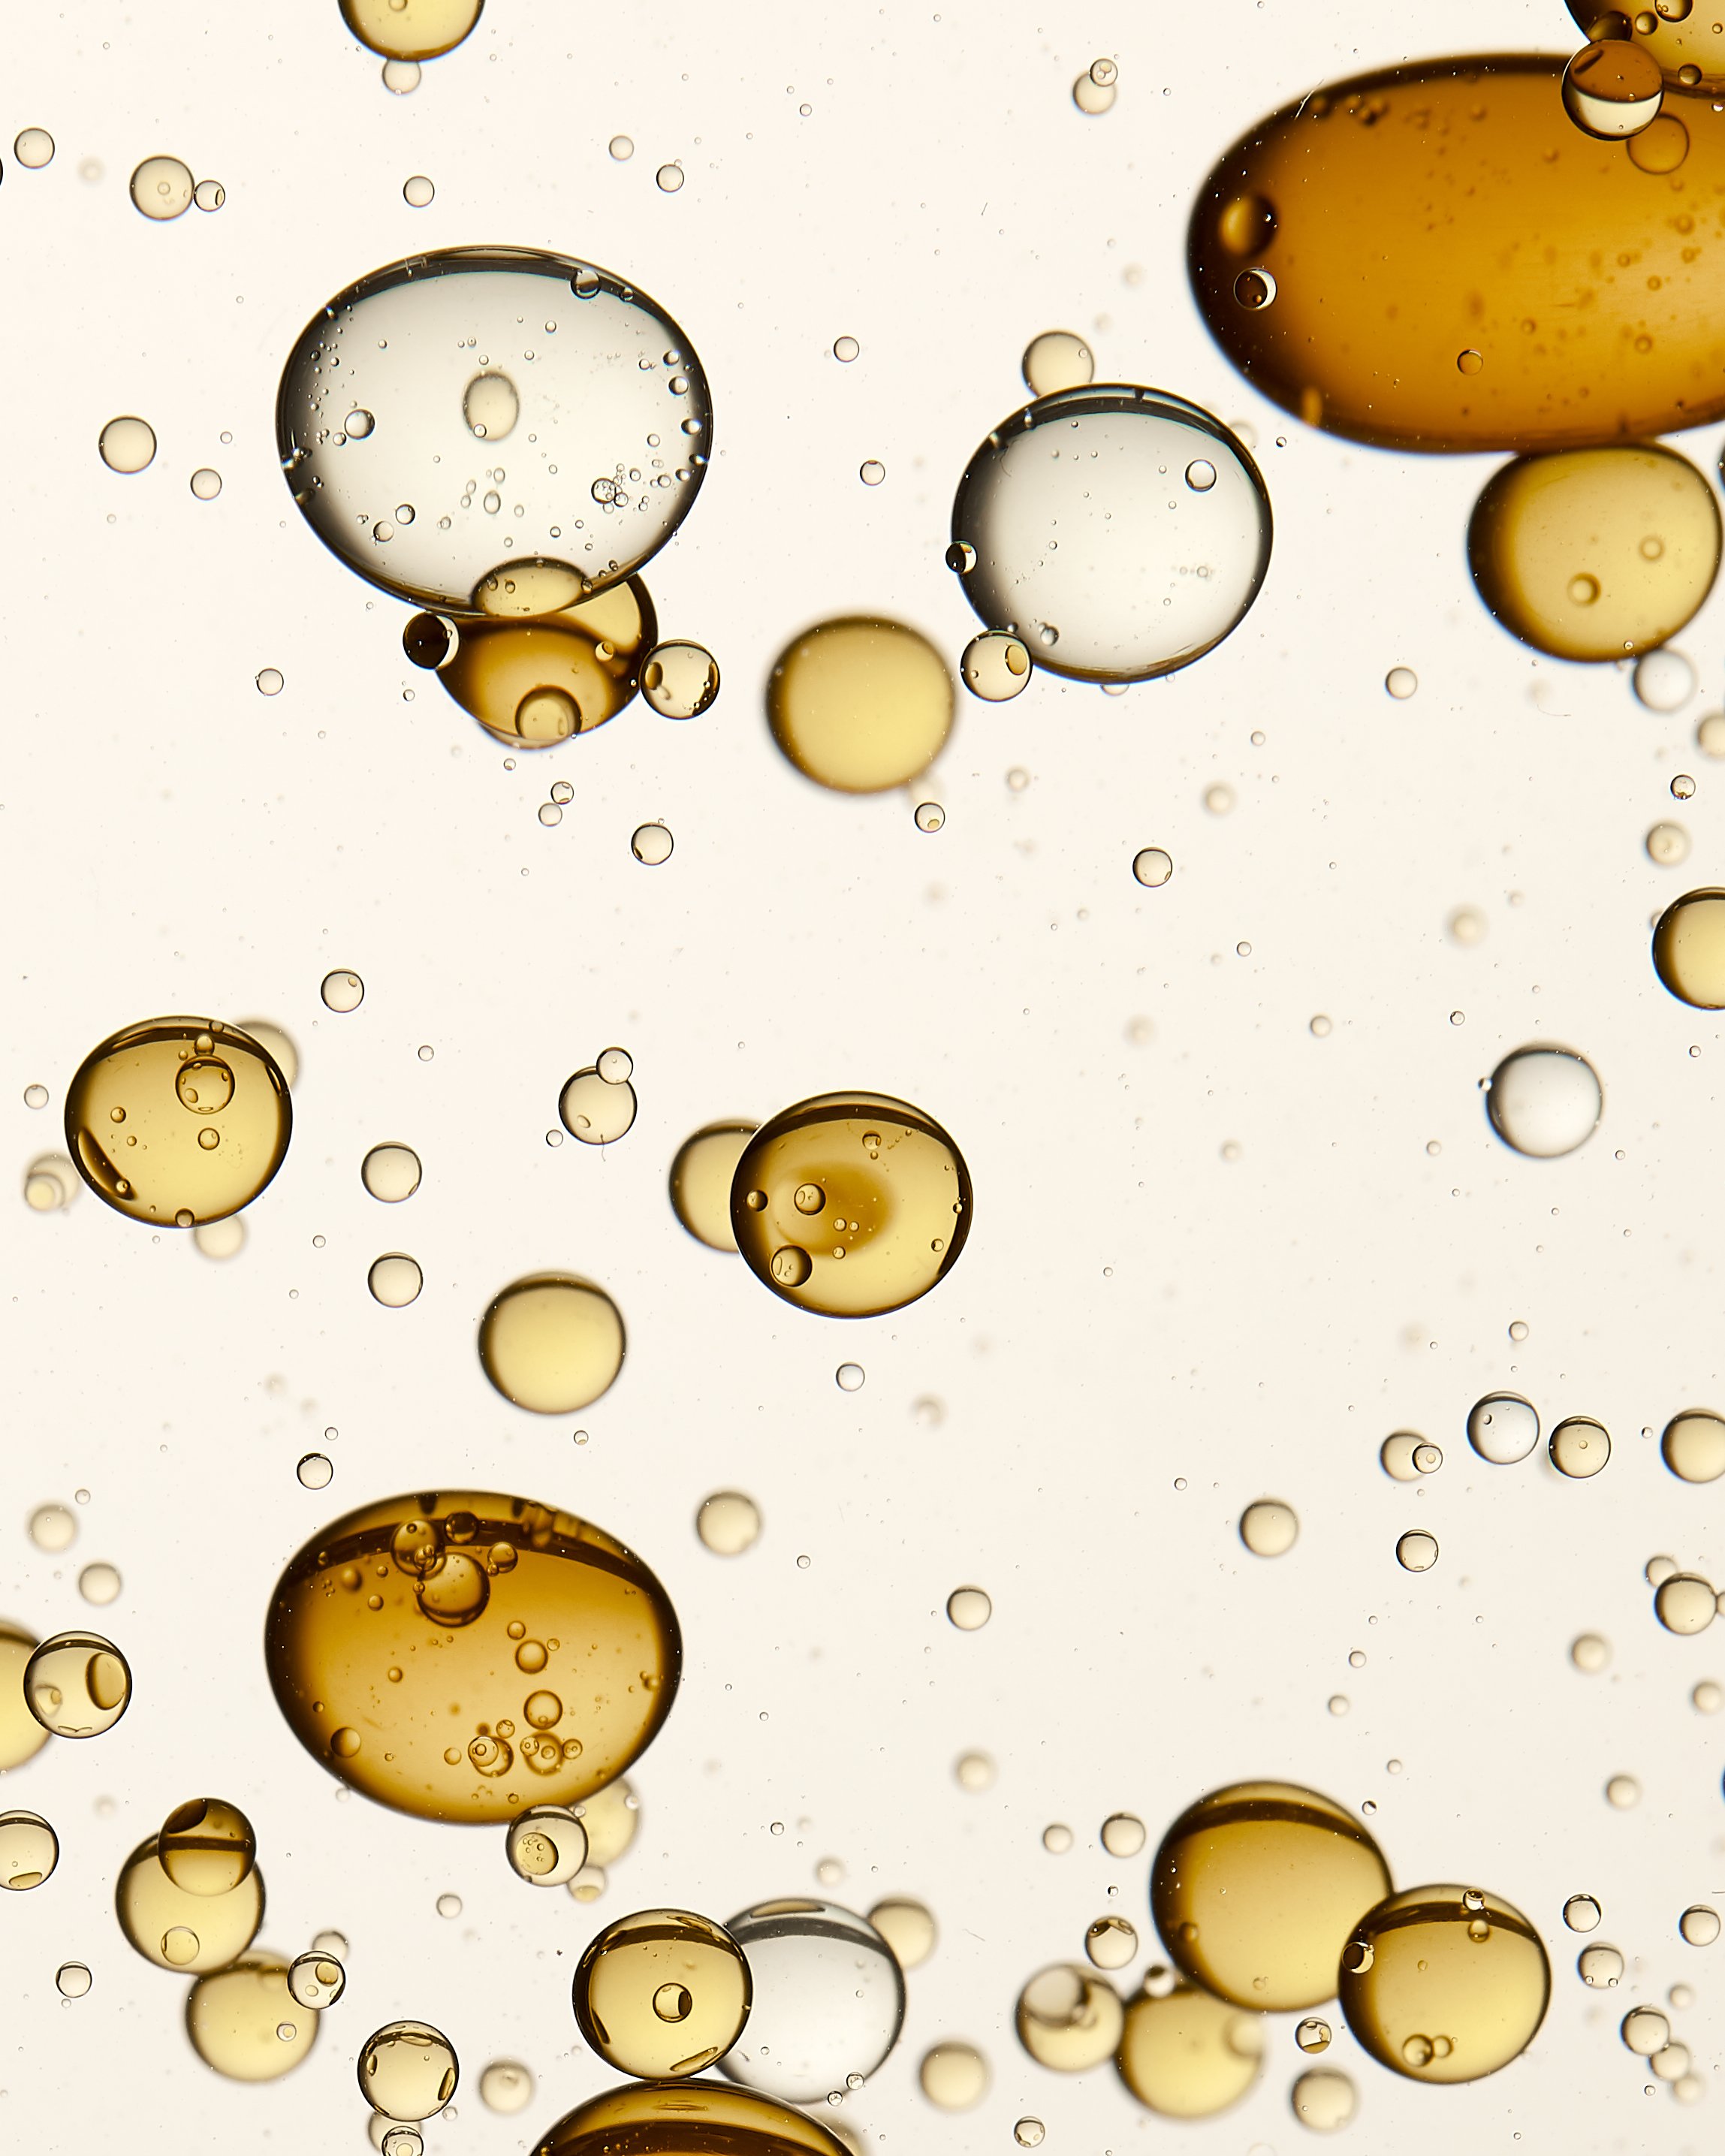 Oil_Bubbles_3.jpg